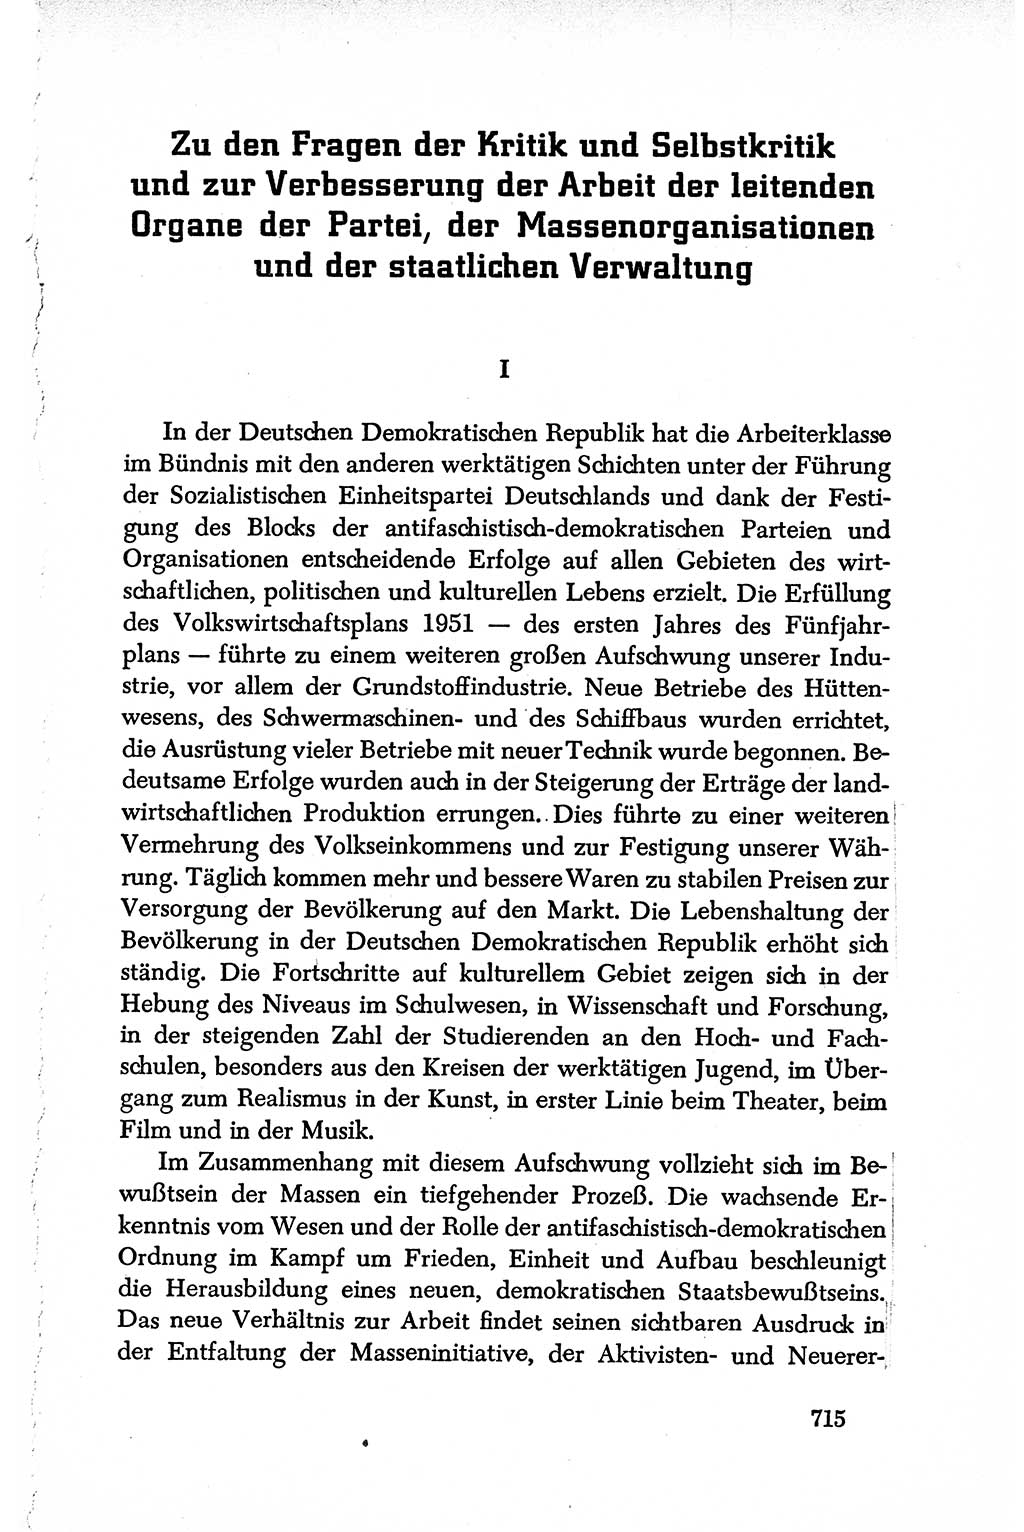 Dokumente der Sozialistischen Einheitspartei Deutschlands (SED) [Deutsche Demokratische Republik (DDR)] 1950-1952, Seite 715 (Dok. SED DDR 1950-1952, S. 715)